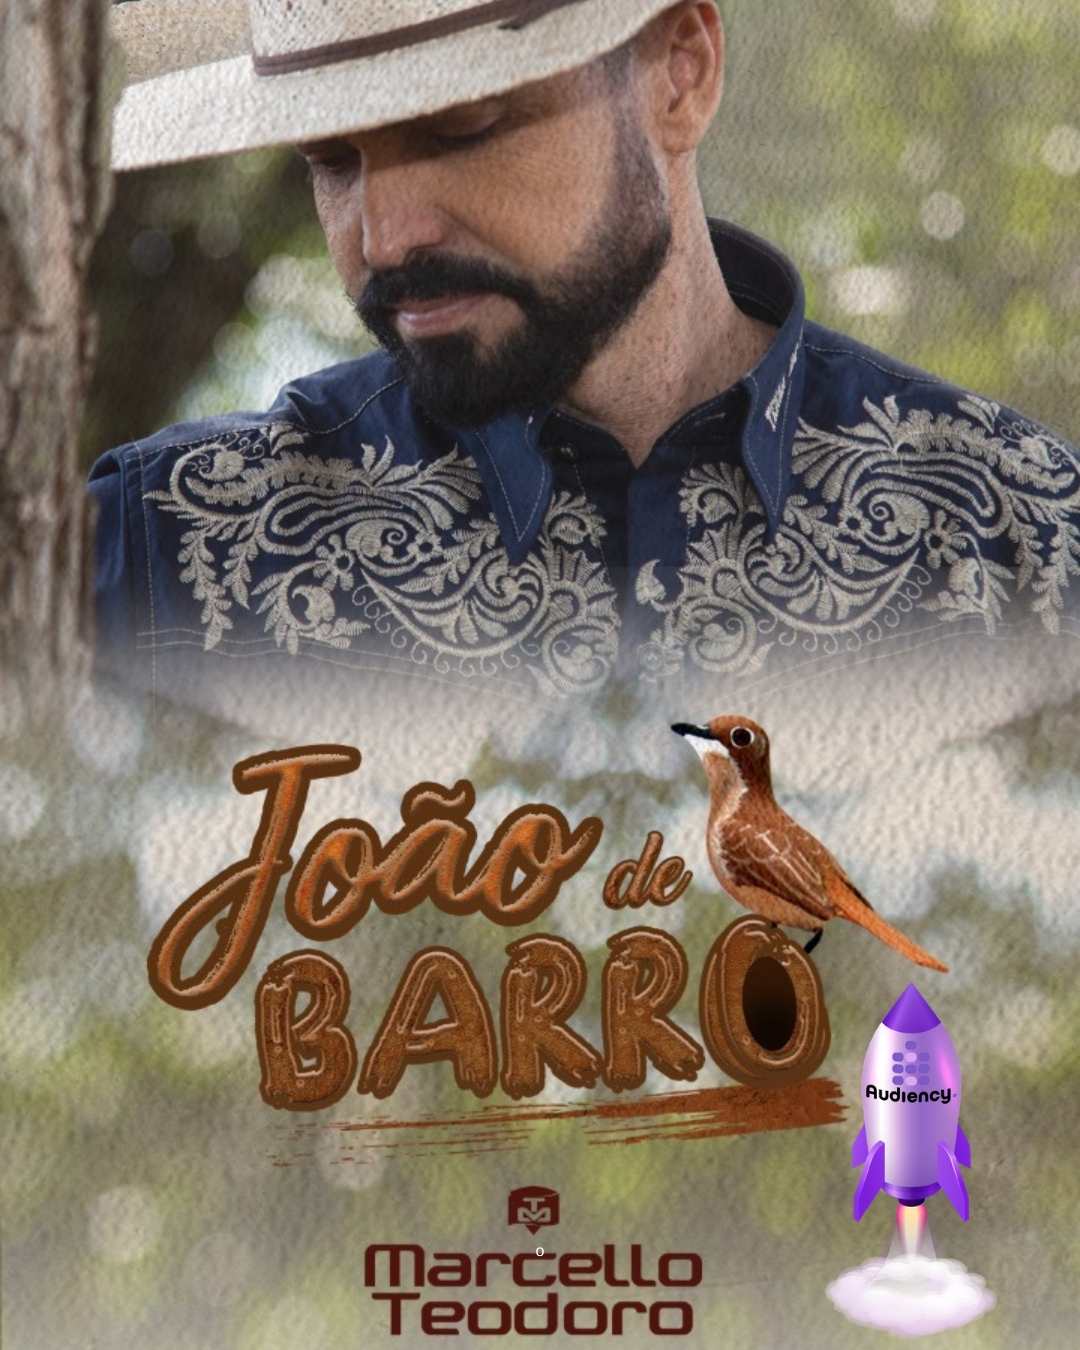 Marcello Teodoro lança seu mais novo single "João de barro"